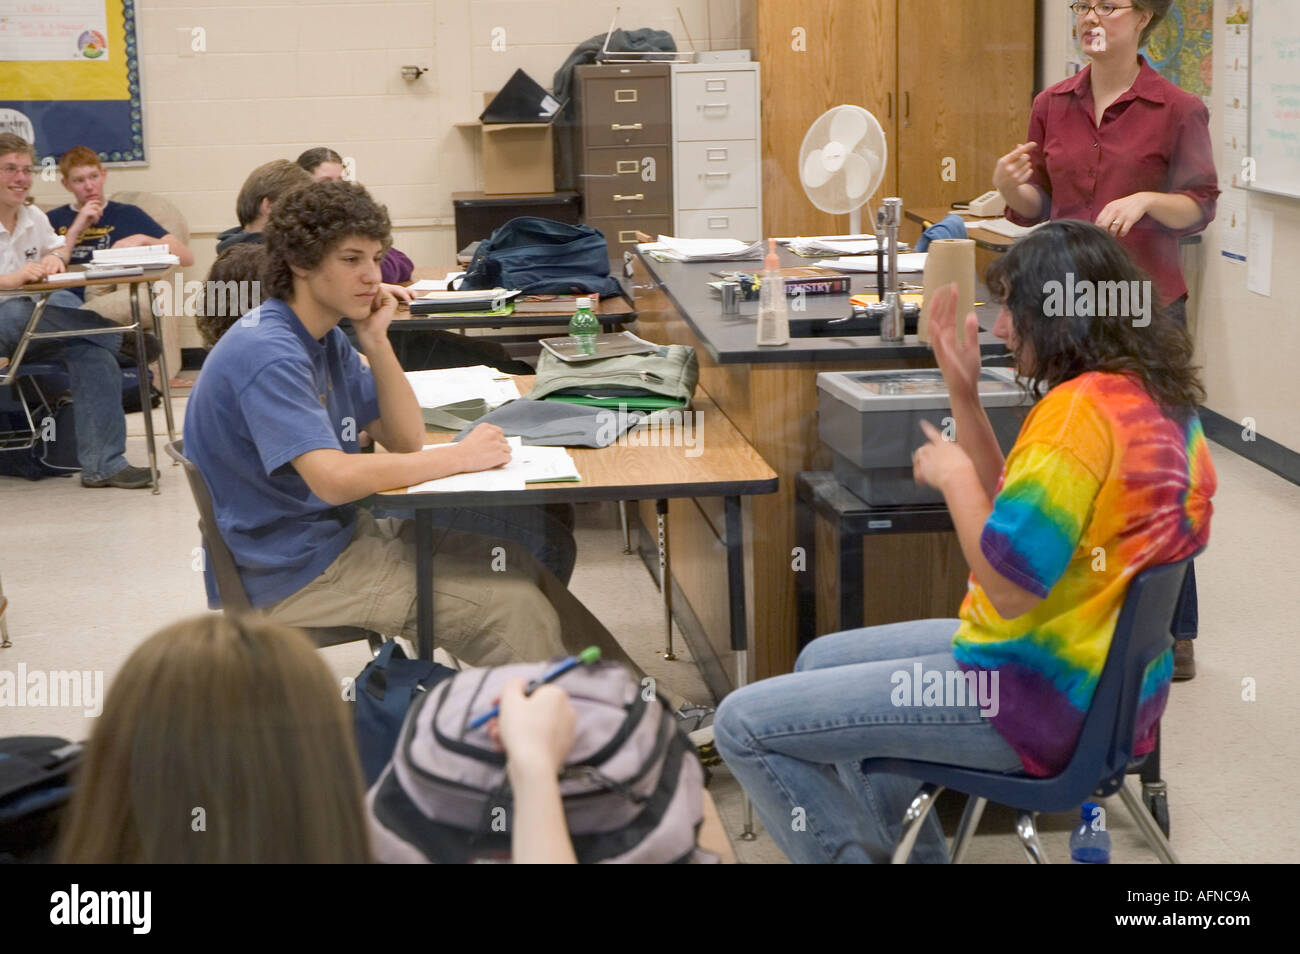 Des étudiants sourds handicapés utilise la langue des signes pour communiquer dans une salle de classe Banque D'Images